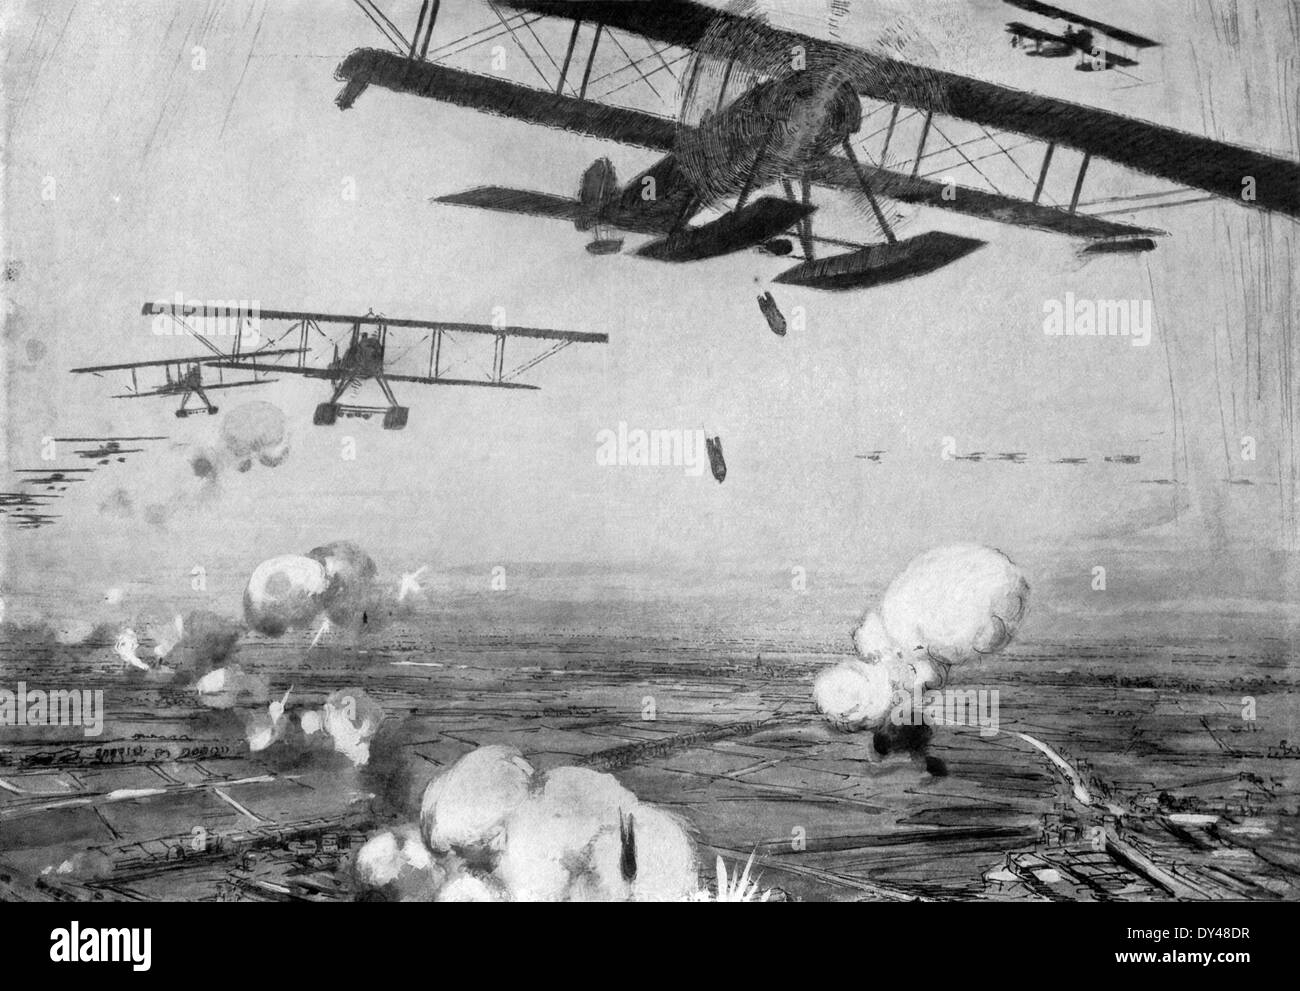 Questo contemporaneo illustrazione mostra il tedesco basi in Belgio durante la Prima Guerra Mondiale essendo attaccato da aerei alleati. Foto Stock